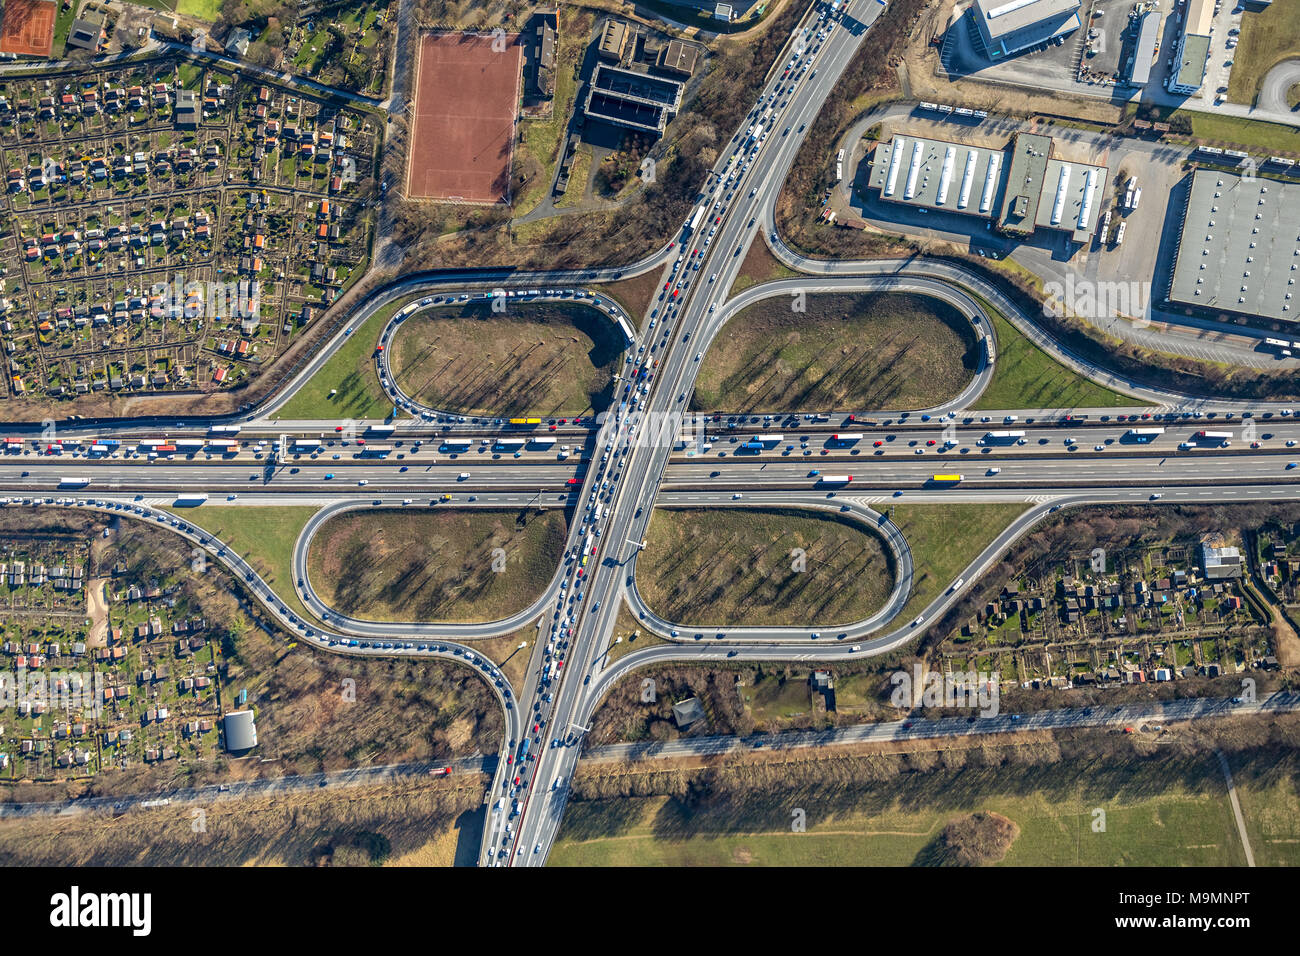 Vista aerea, Autostrada incrocio Duisburg autostrada A59 e l'autostrada A40 presso il canale Rhein-Herne, Duisburg, Renania settentrionale-Vestfalia Foto Stock